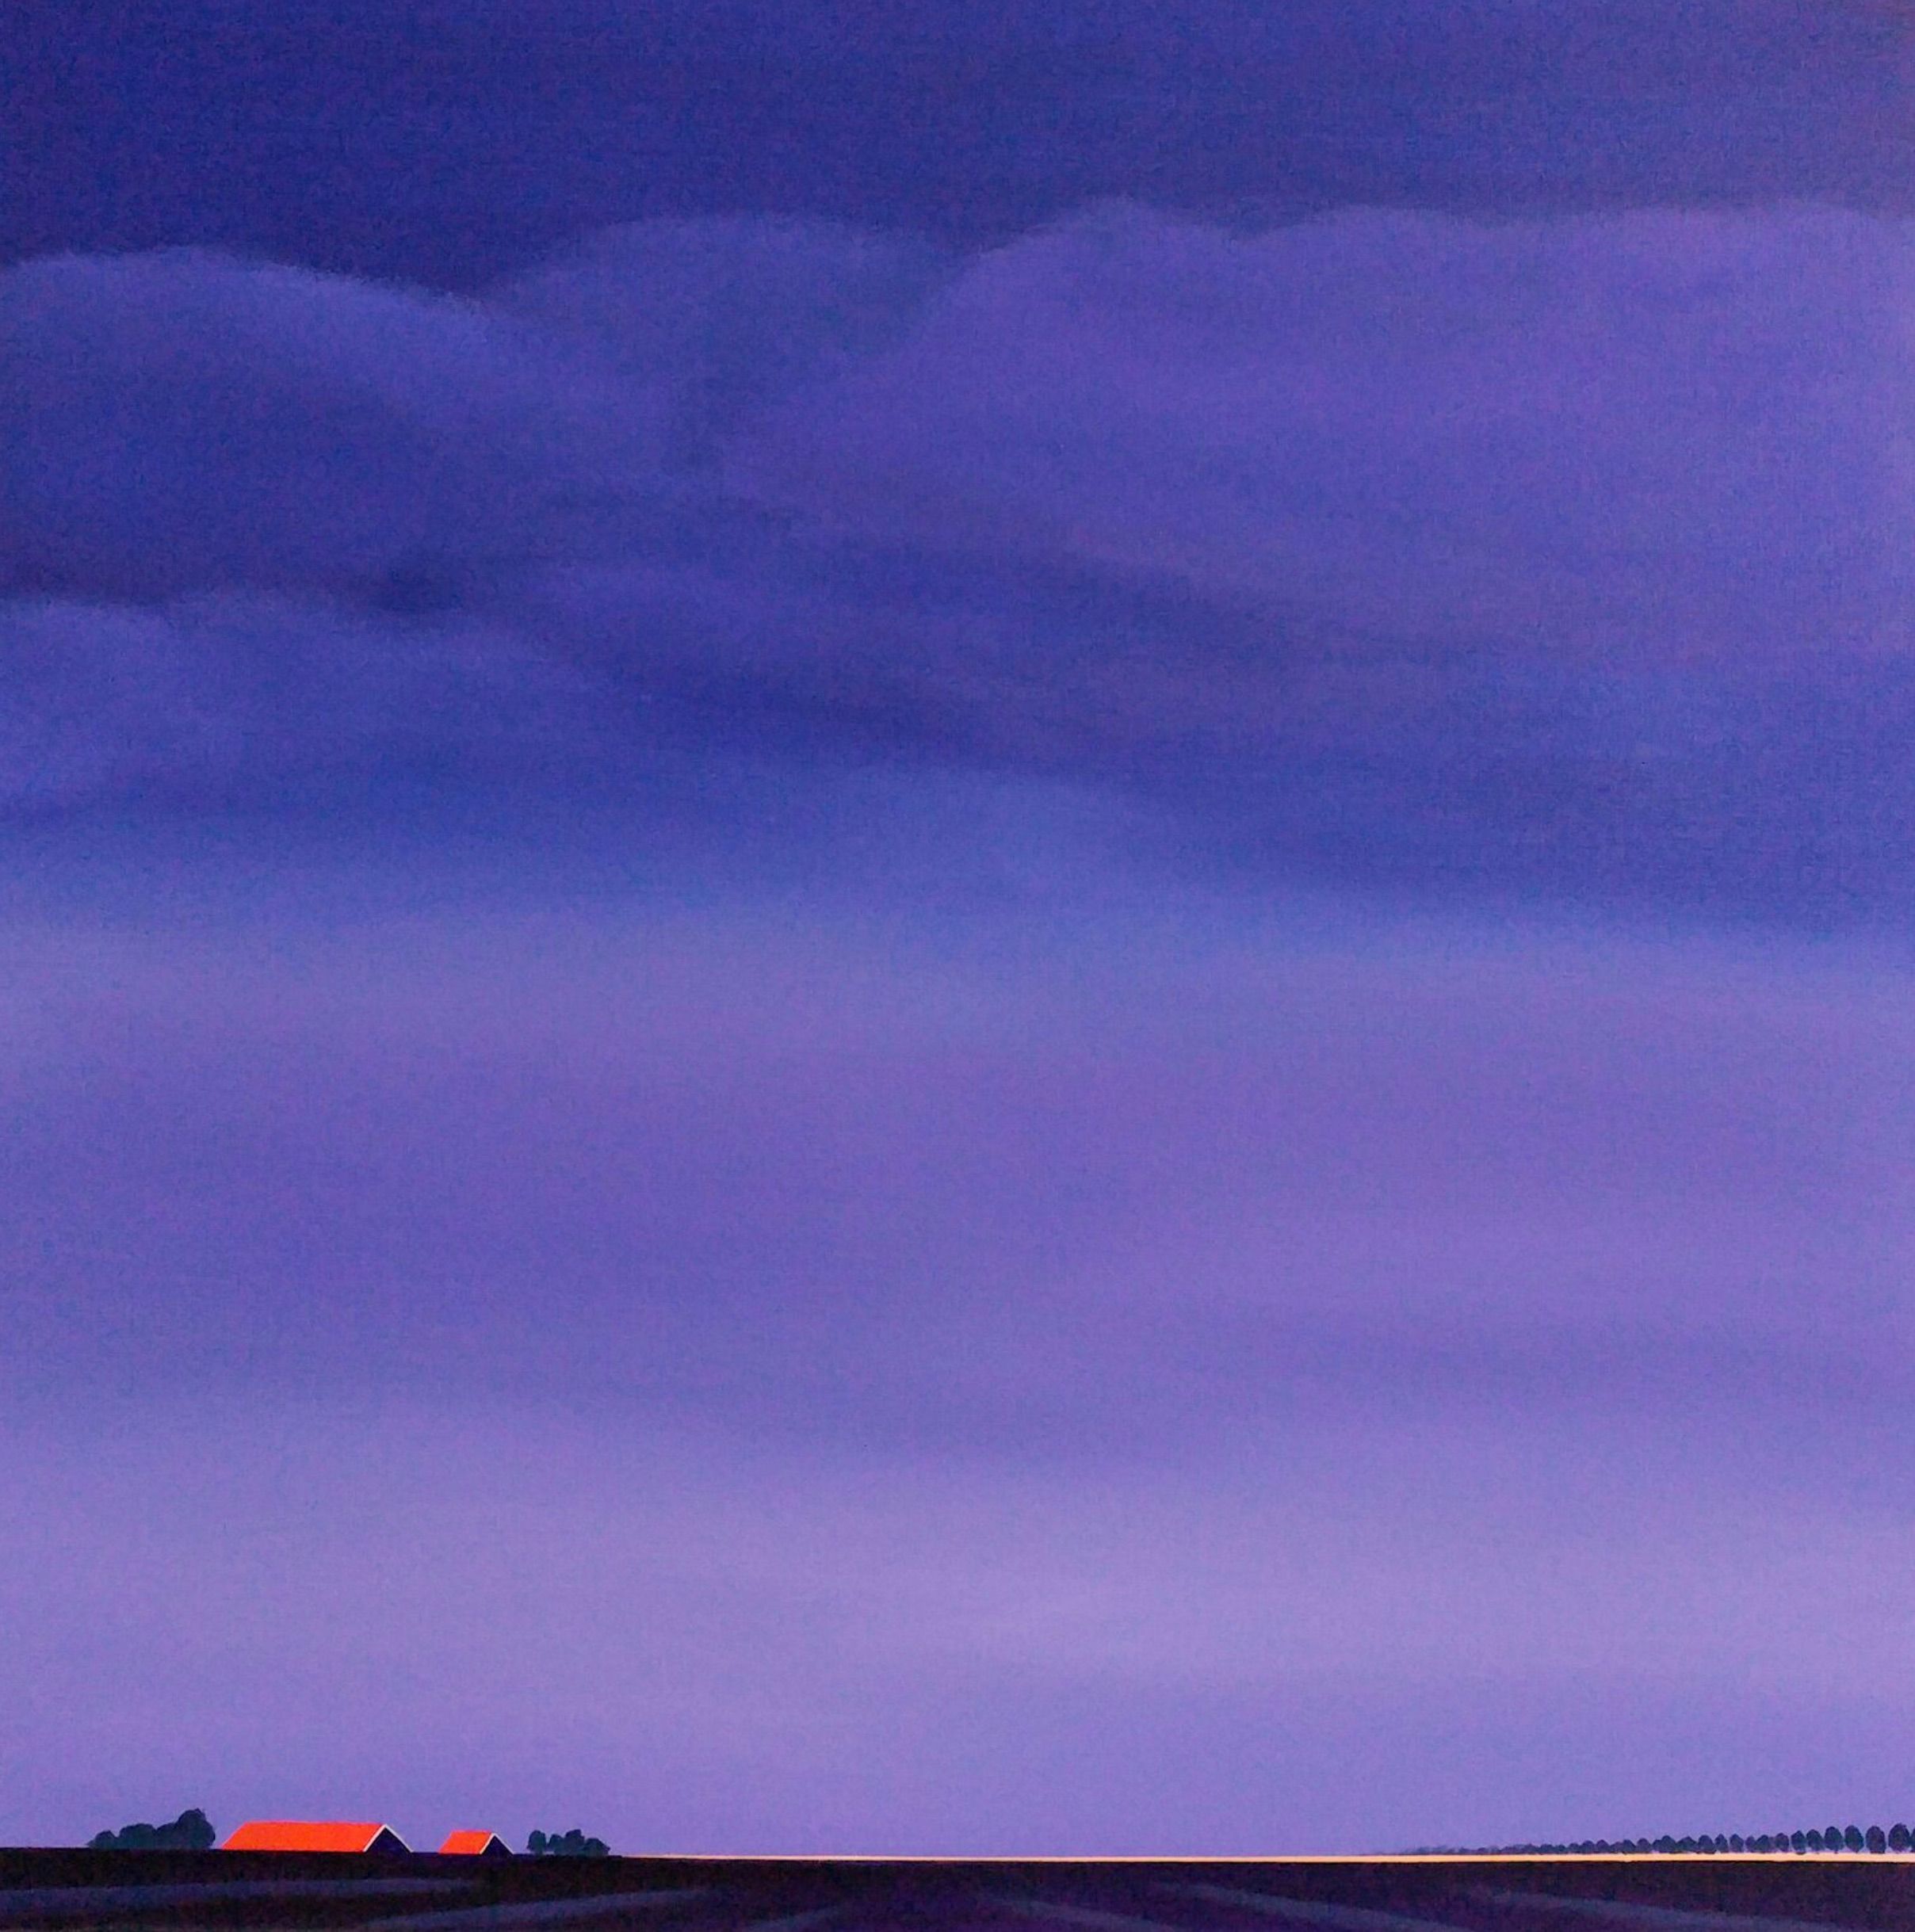 Il dipinto "Purple evening" di Nelly van Nieuwenhuijzen mostra un paesaggio della Zelanda. L'ultima luce del sole colora l'orizzonte di oro/viola e i tetti di rosso fuoco.